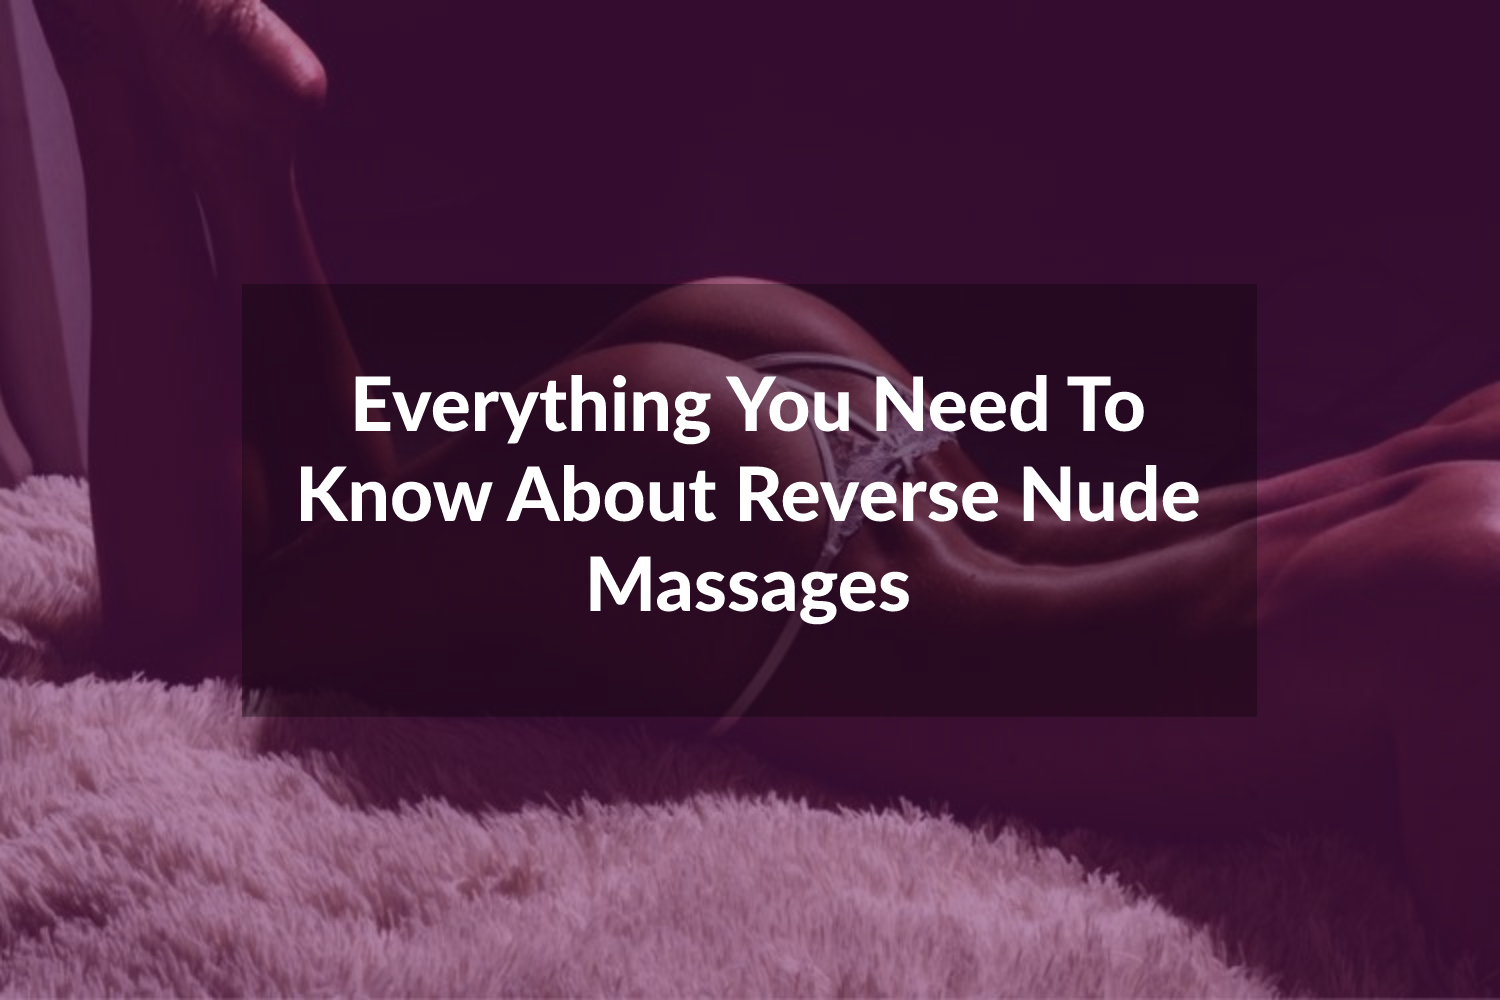 Nude reverse massage